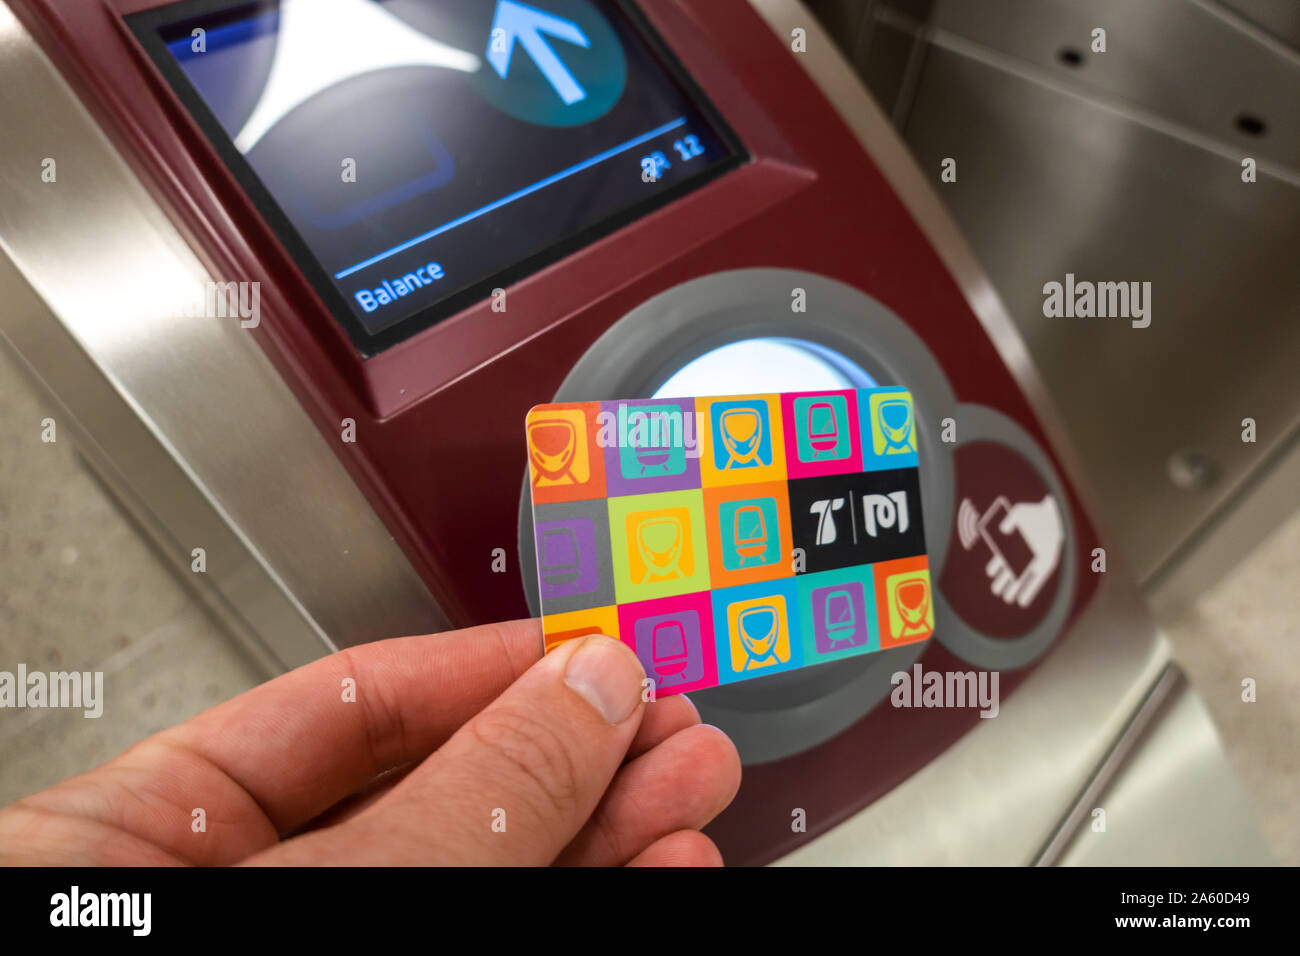 La carte de voyage sert à payer des tarifs sur le Métro de Doha au Qatar, est présenté sur un lecteur NFC aux portes. Solde restant affiché à l'écran Banque D'Images